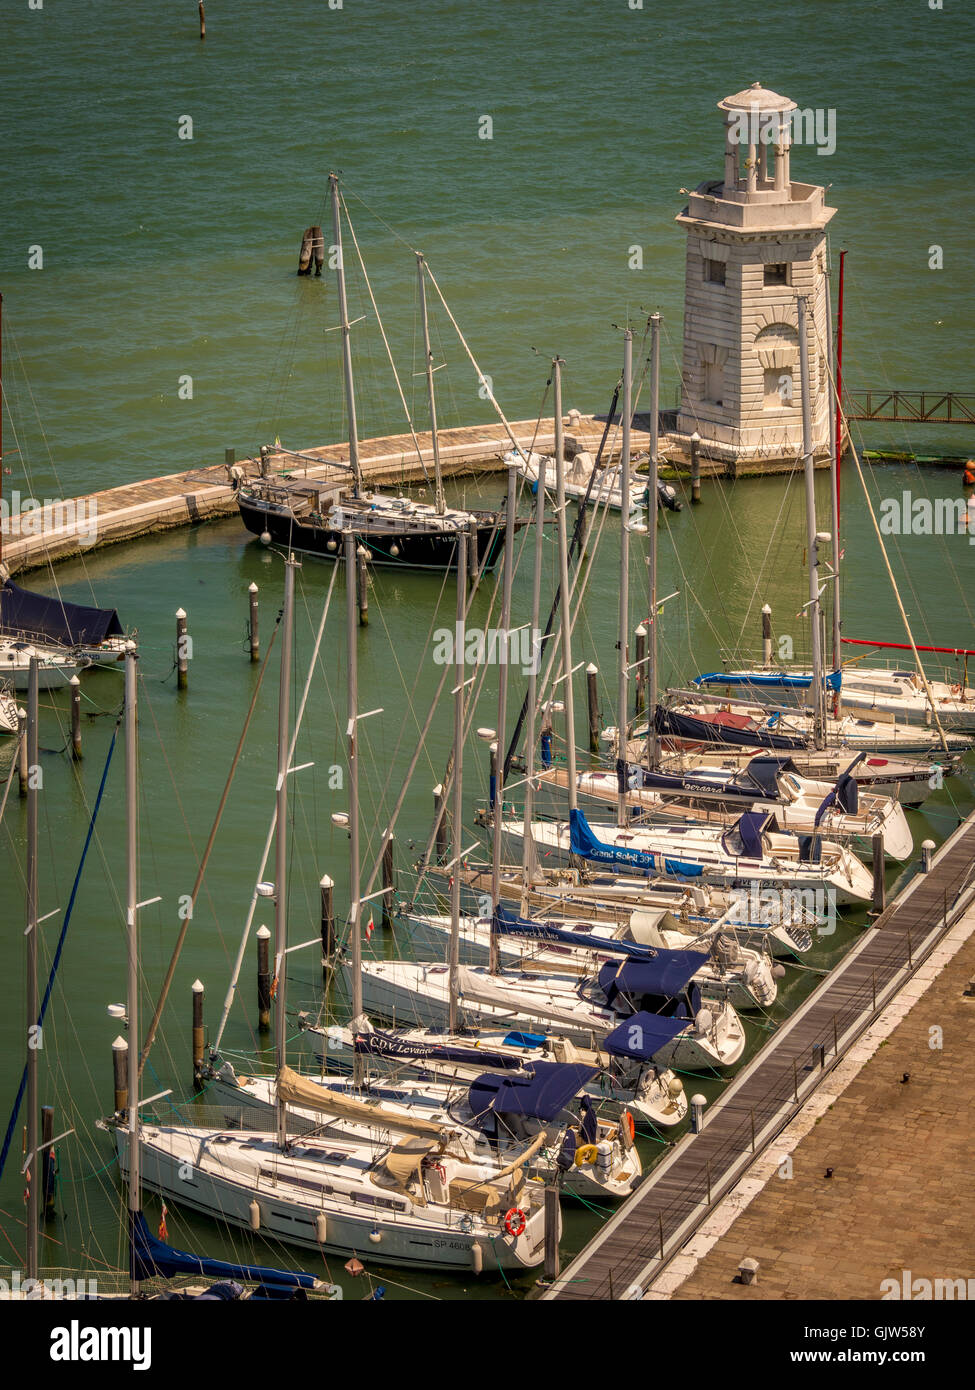 Vue aérienne de bateaux amarrés dans la marina, sur l'île de San Giorgio Maggiore. Venise, Italie. Banque D'Images